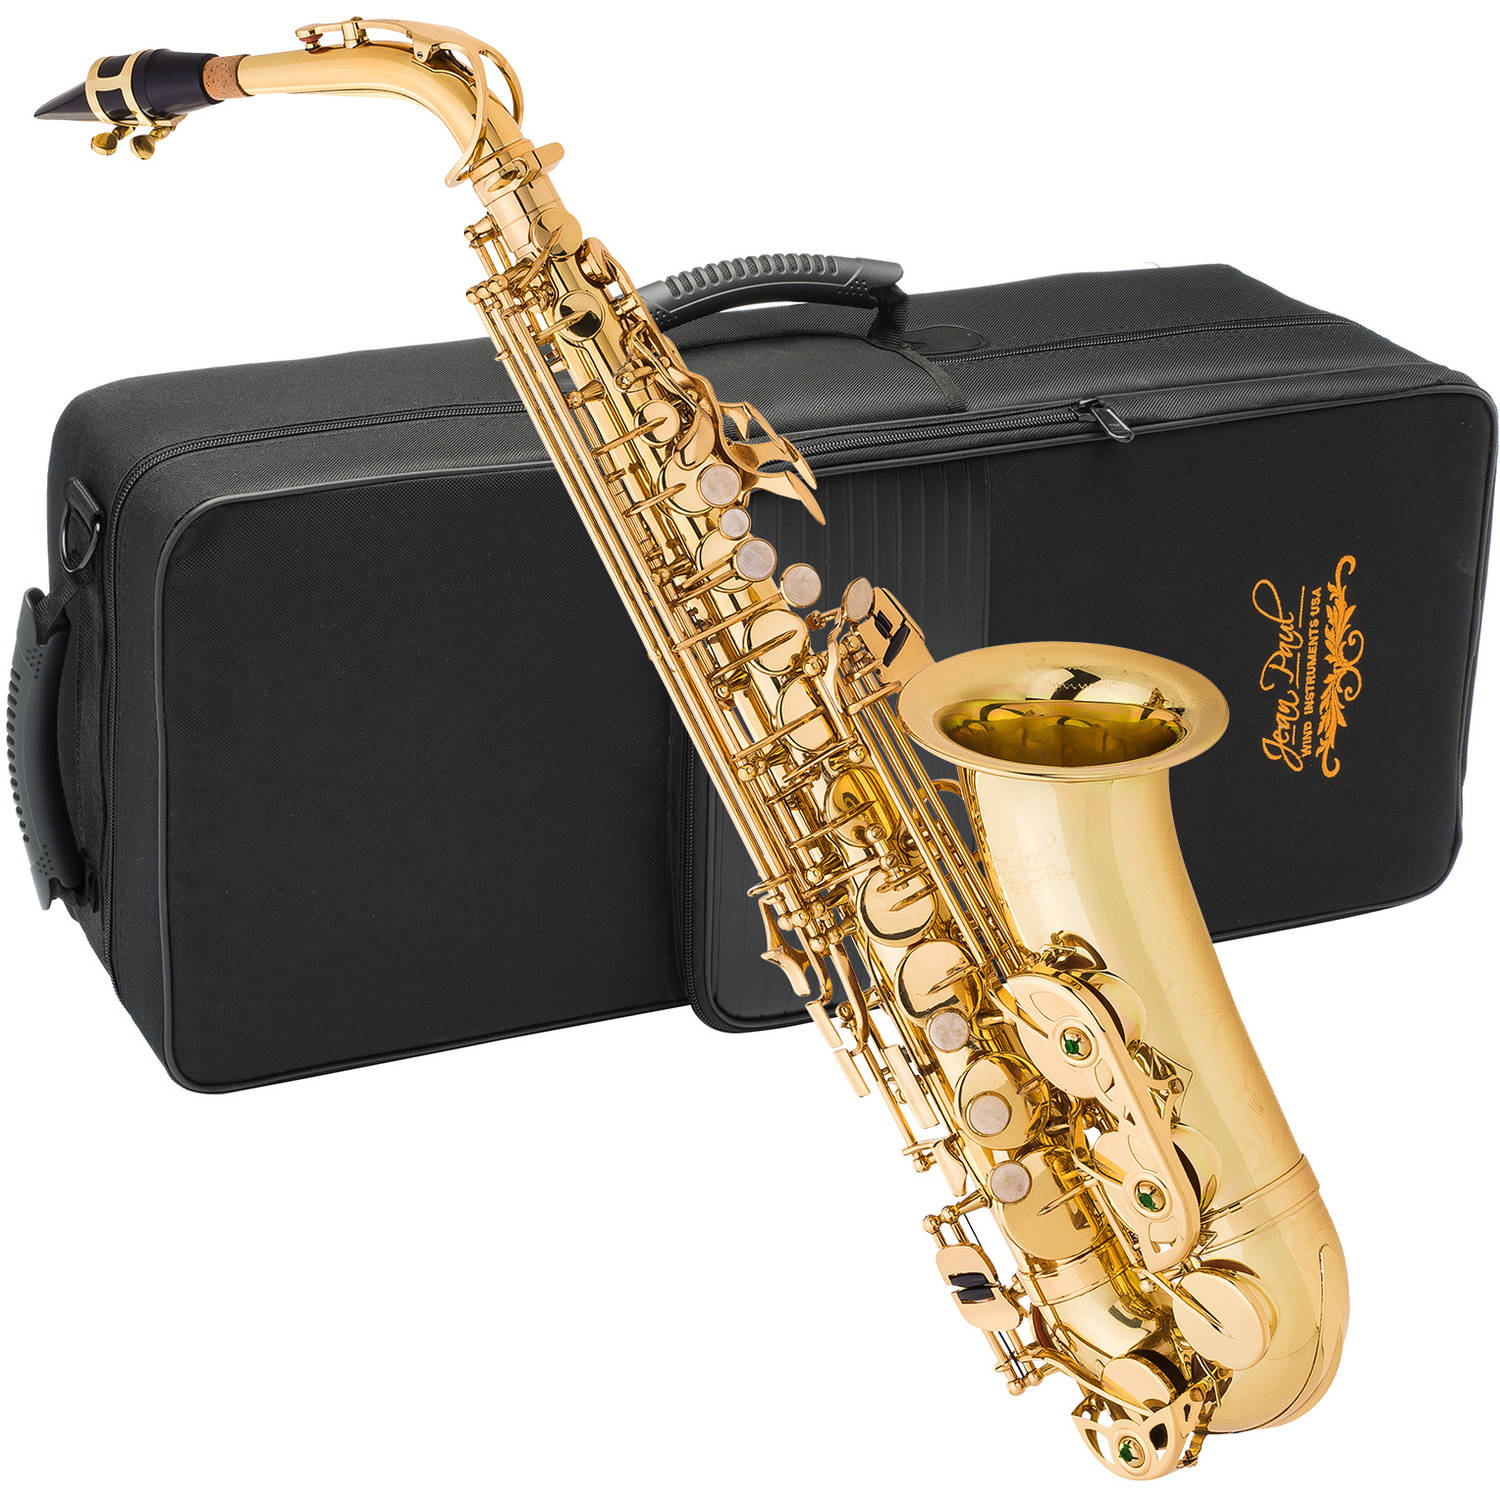 Alto saxophone. Саксофон Альт. Кейс для саксофона тенор 1940г. Саксофон фото.